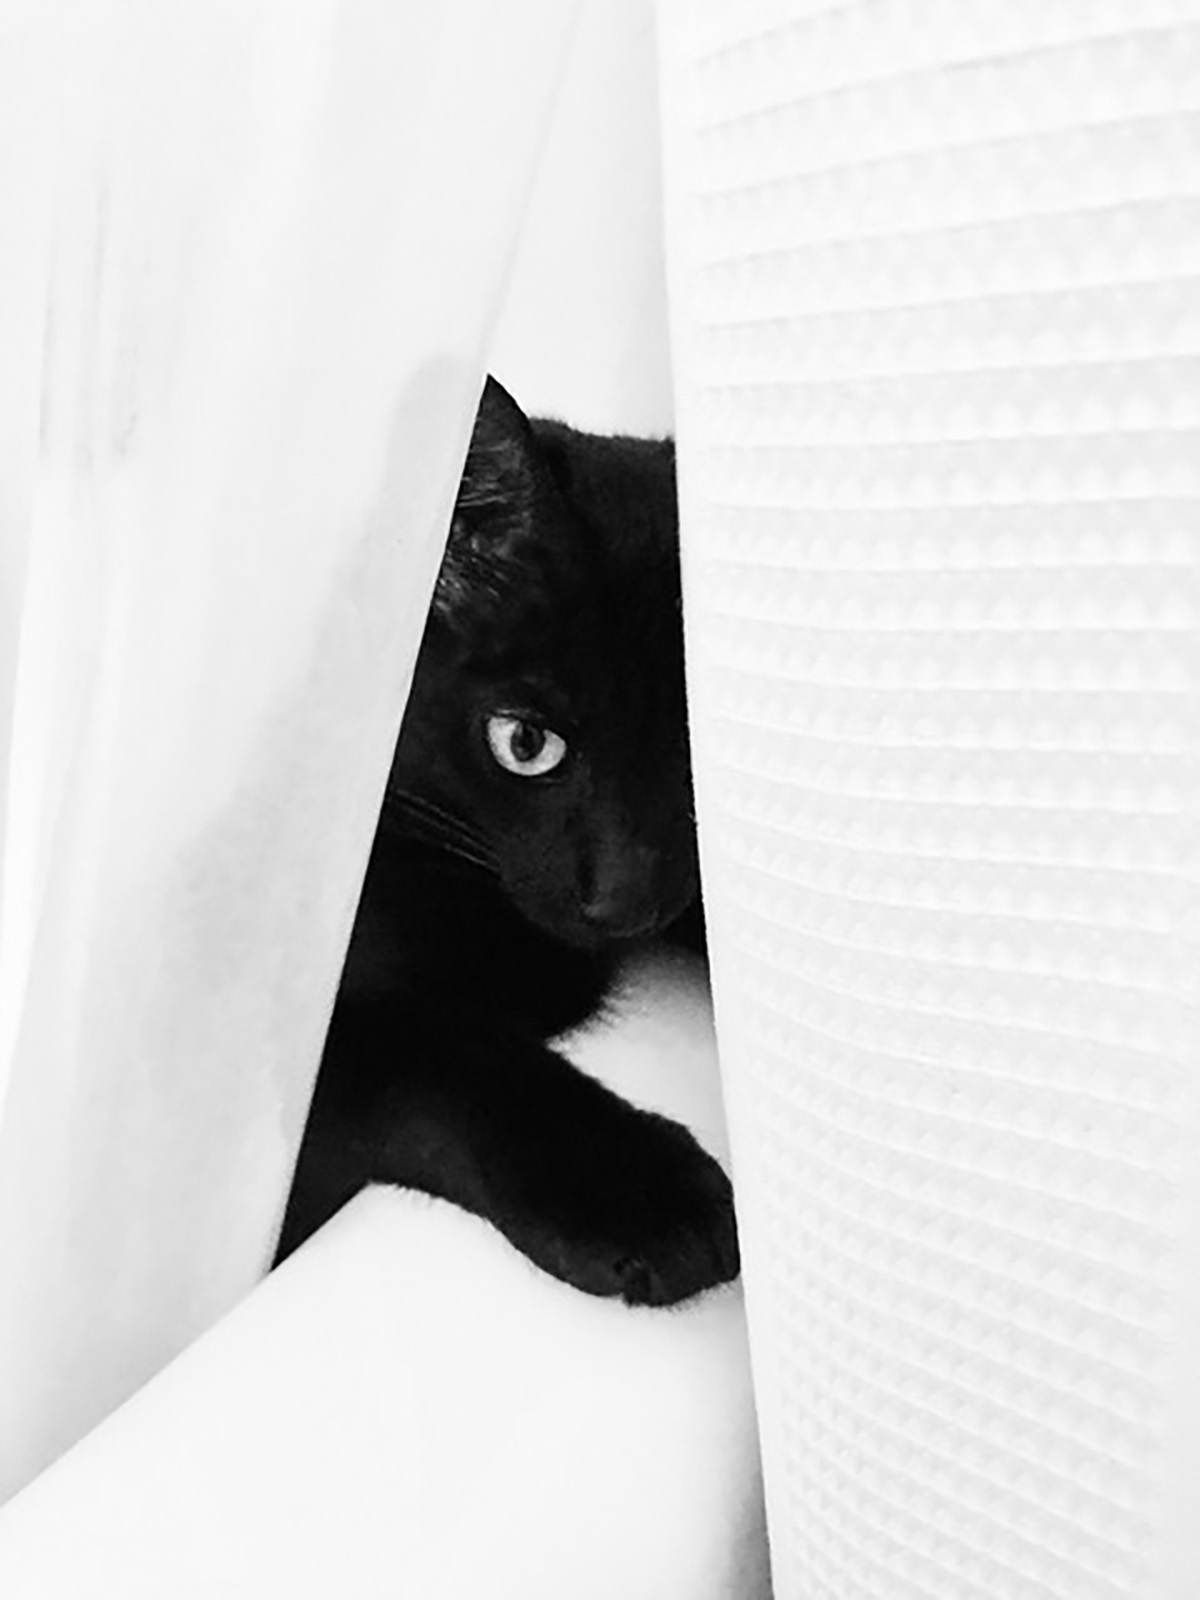 Lynda Geith - black cat